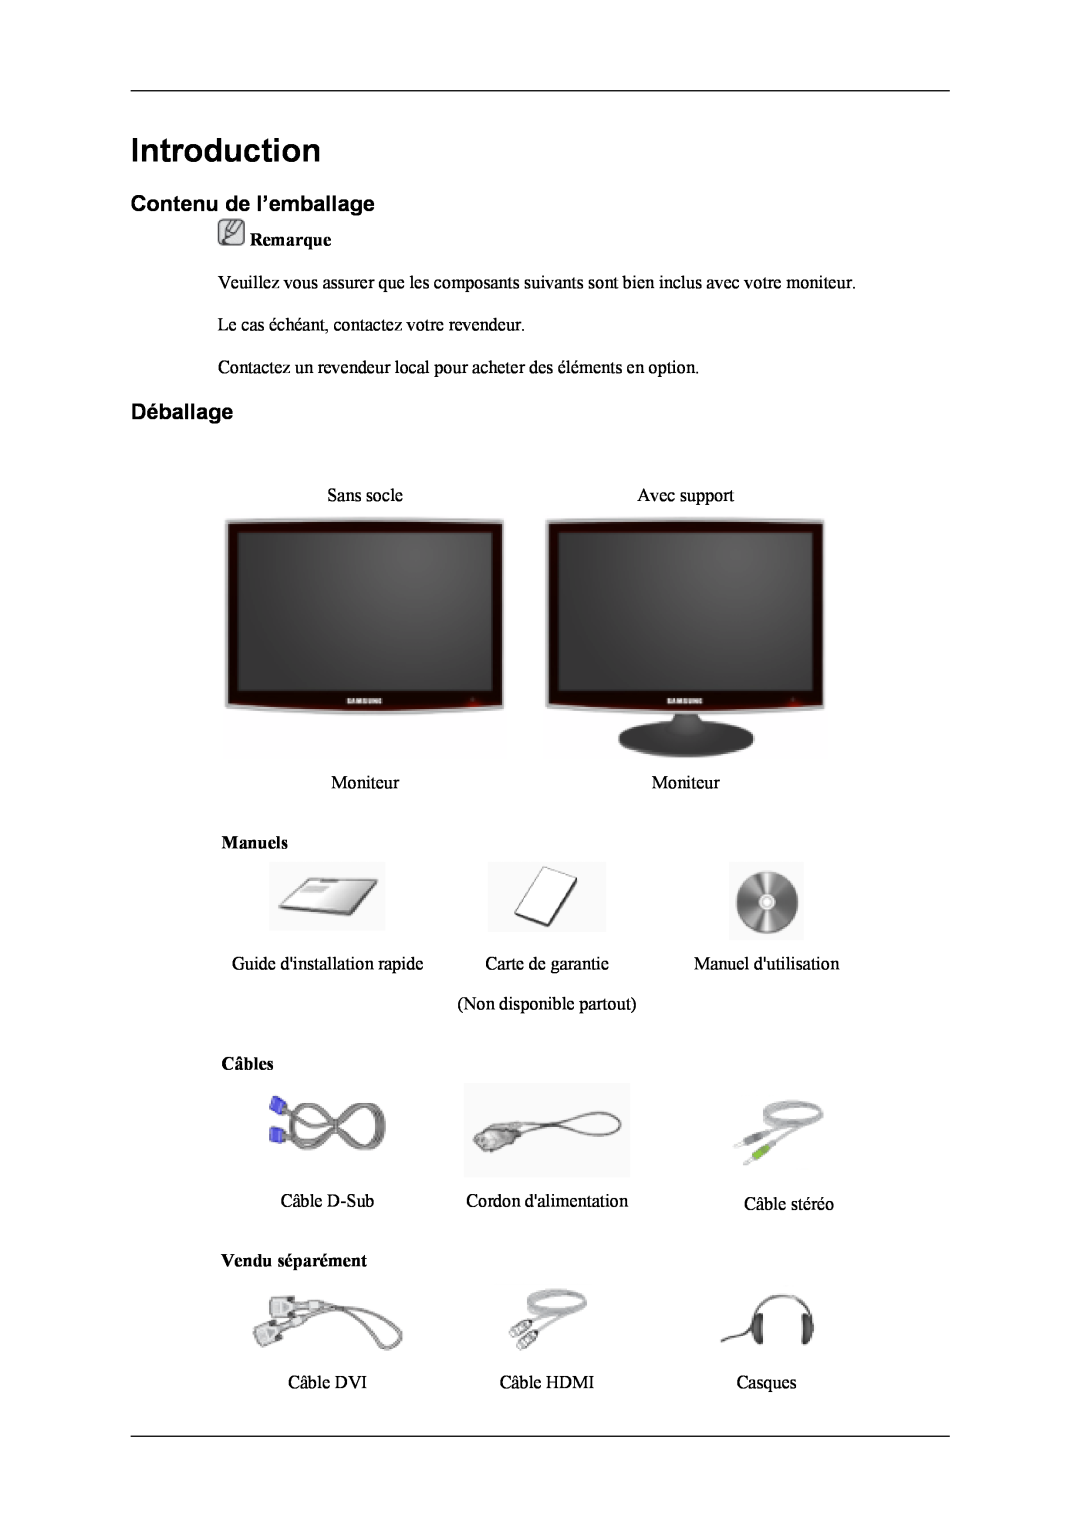 Samsung LS20TDDSUV/EN manual Introduction, Contenu de l’emballage, Déballage, Remarque, Manuels, Câbles, Vendu séparément 